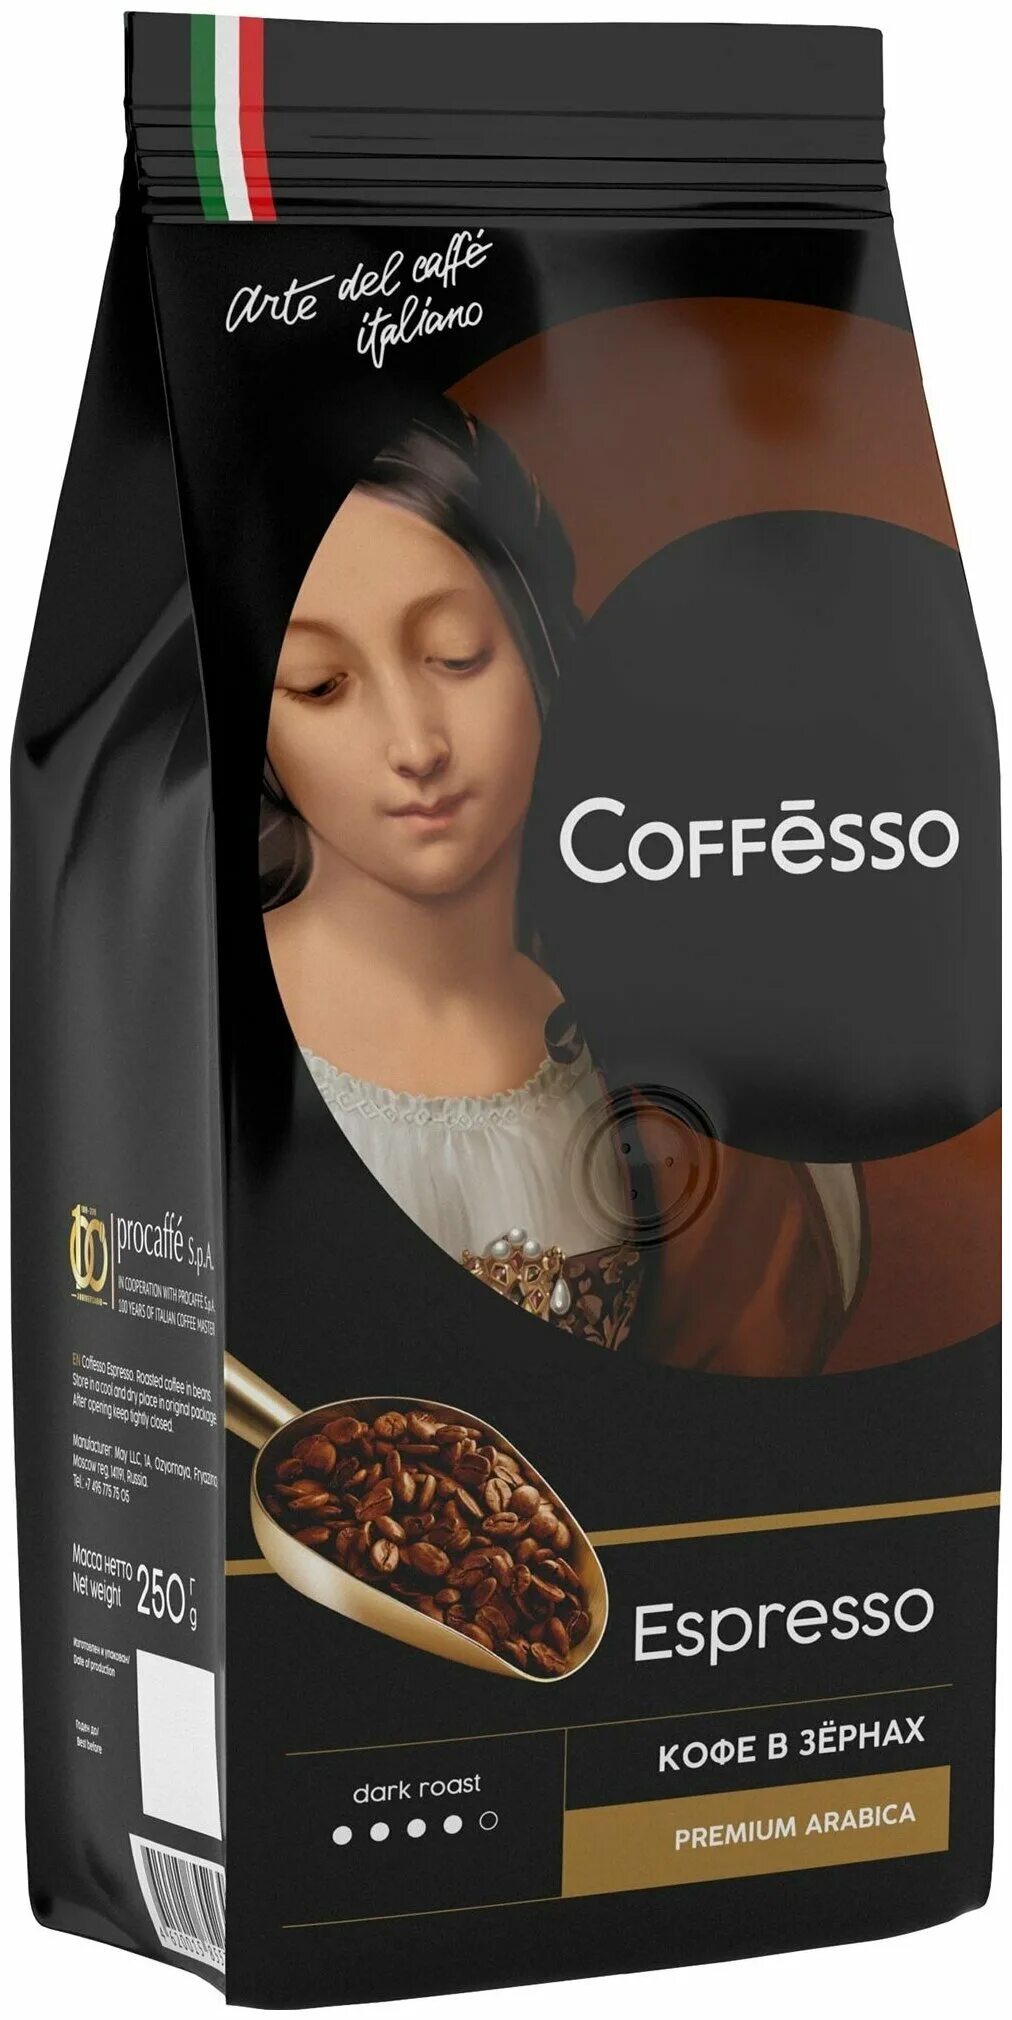 Coffesso купить. Кофе зерно Coffesso Espresso 250г. Кофе в зернах Coffesso Classico italiano. Кофе Коффессо Классико 250г зерно. Coffesso в зернах 250.